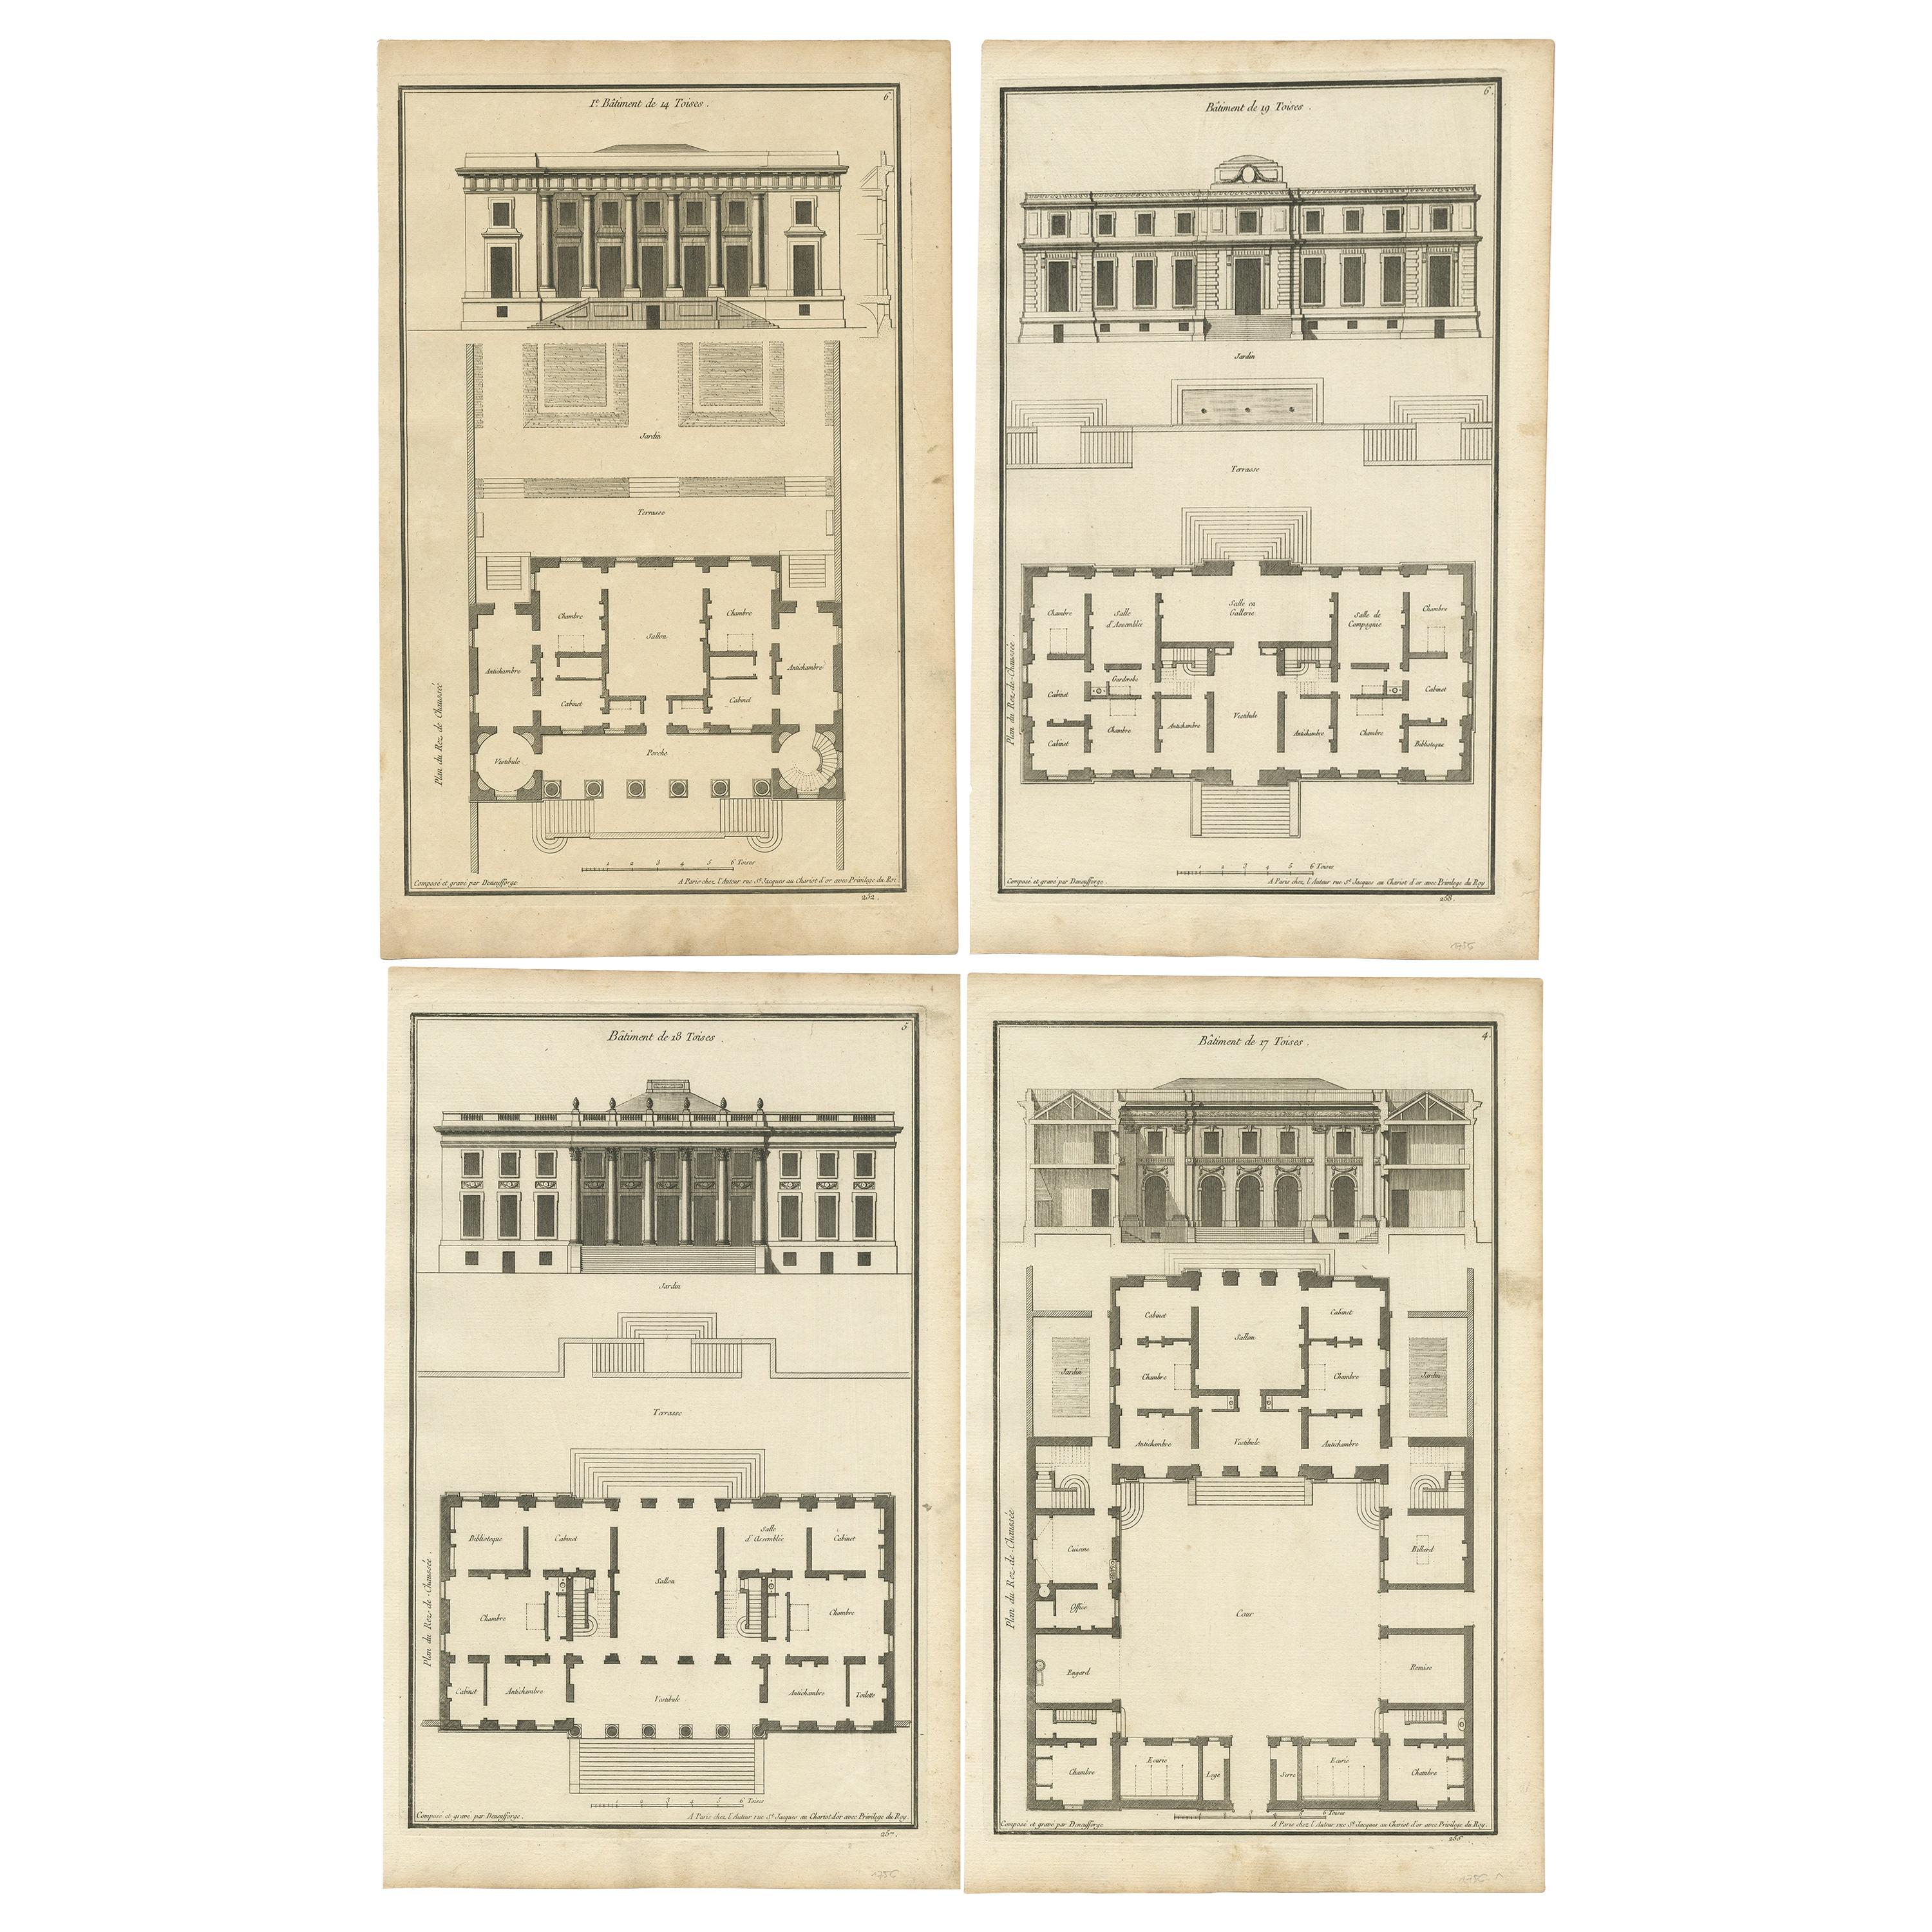 Satz von vier antiken Fotodrucken verschiedener Gebäudepläne und -fassaden